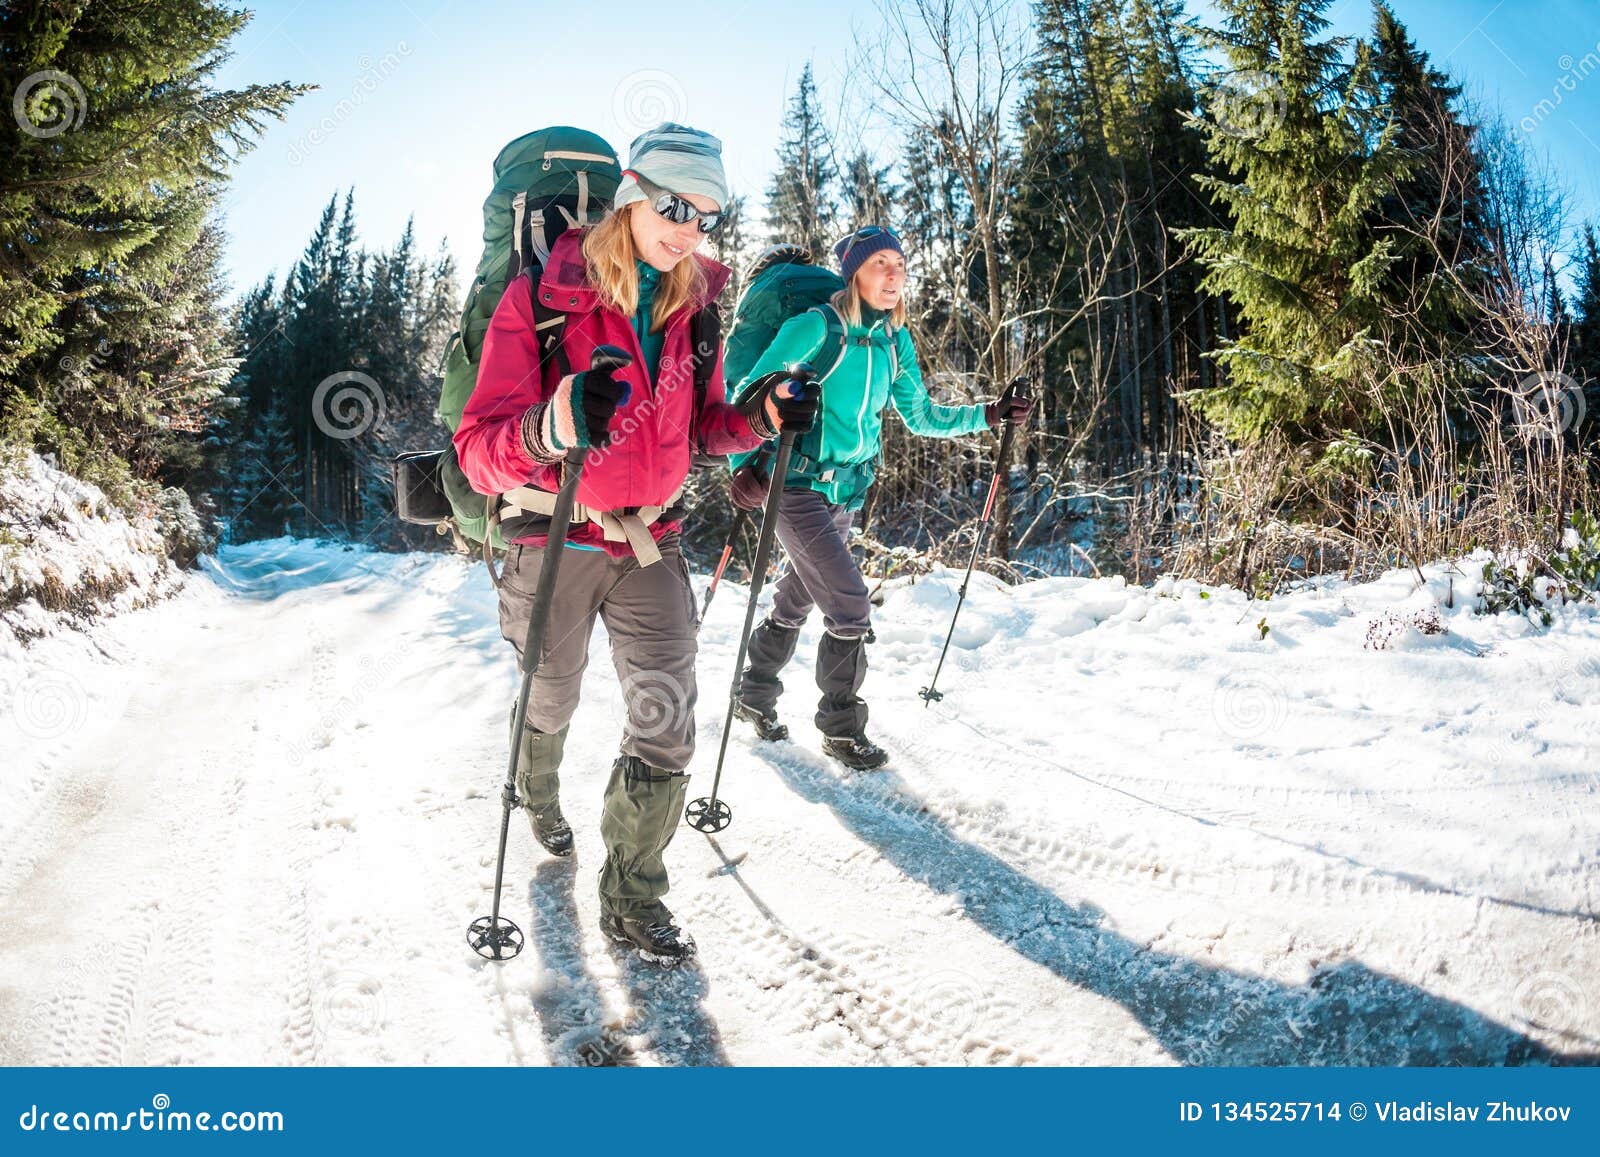 two women in a winter hike